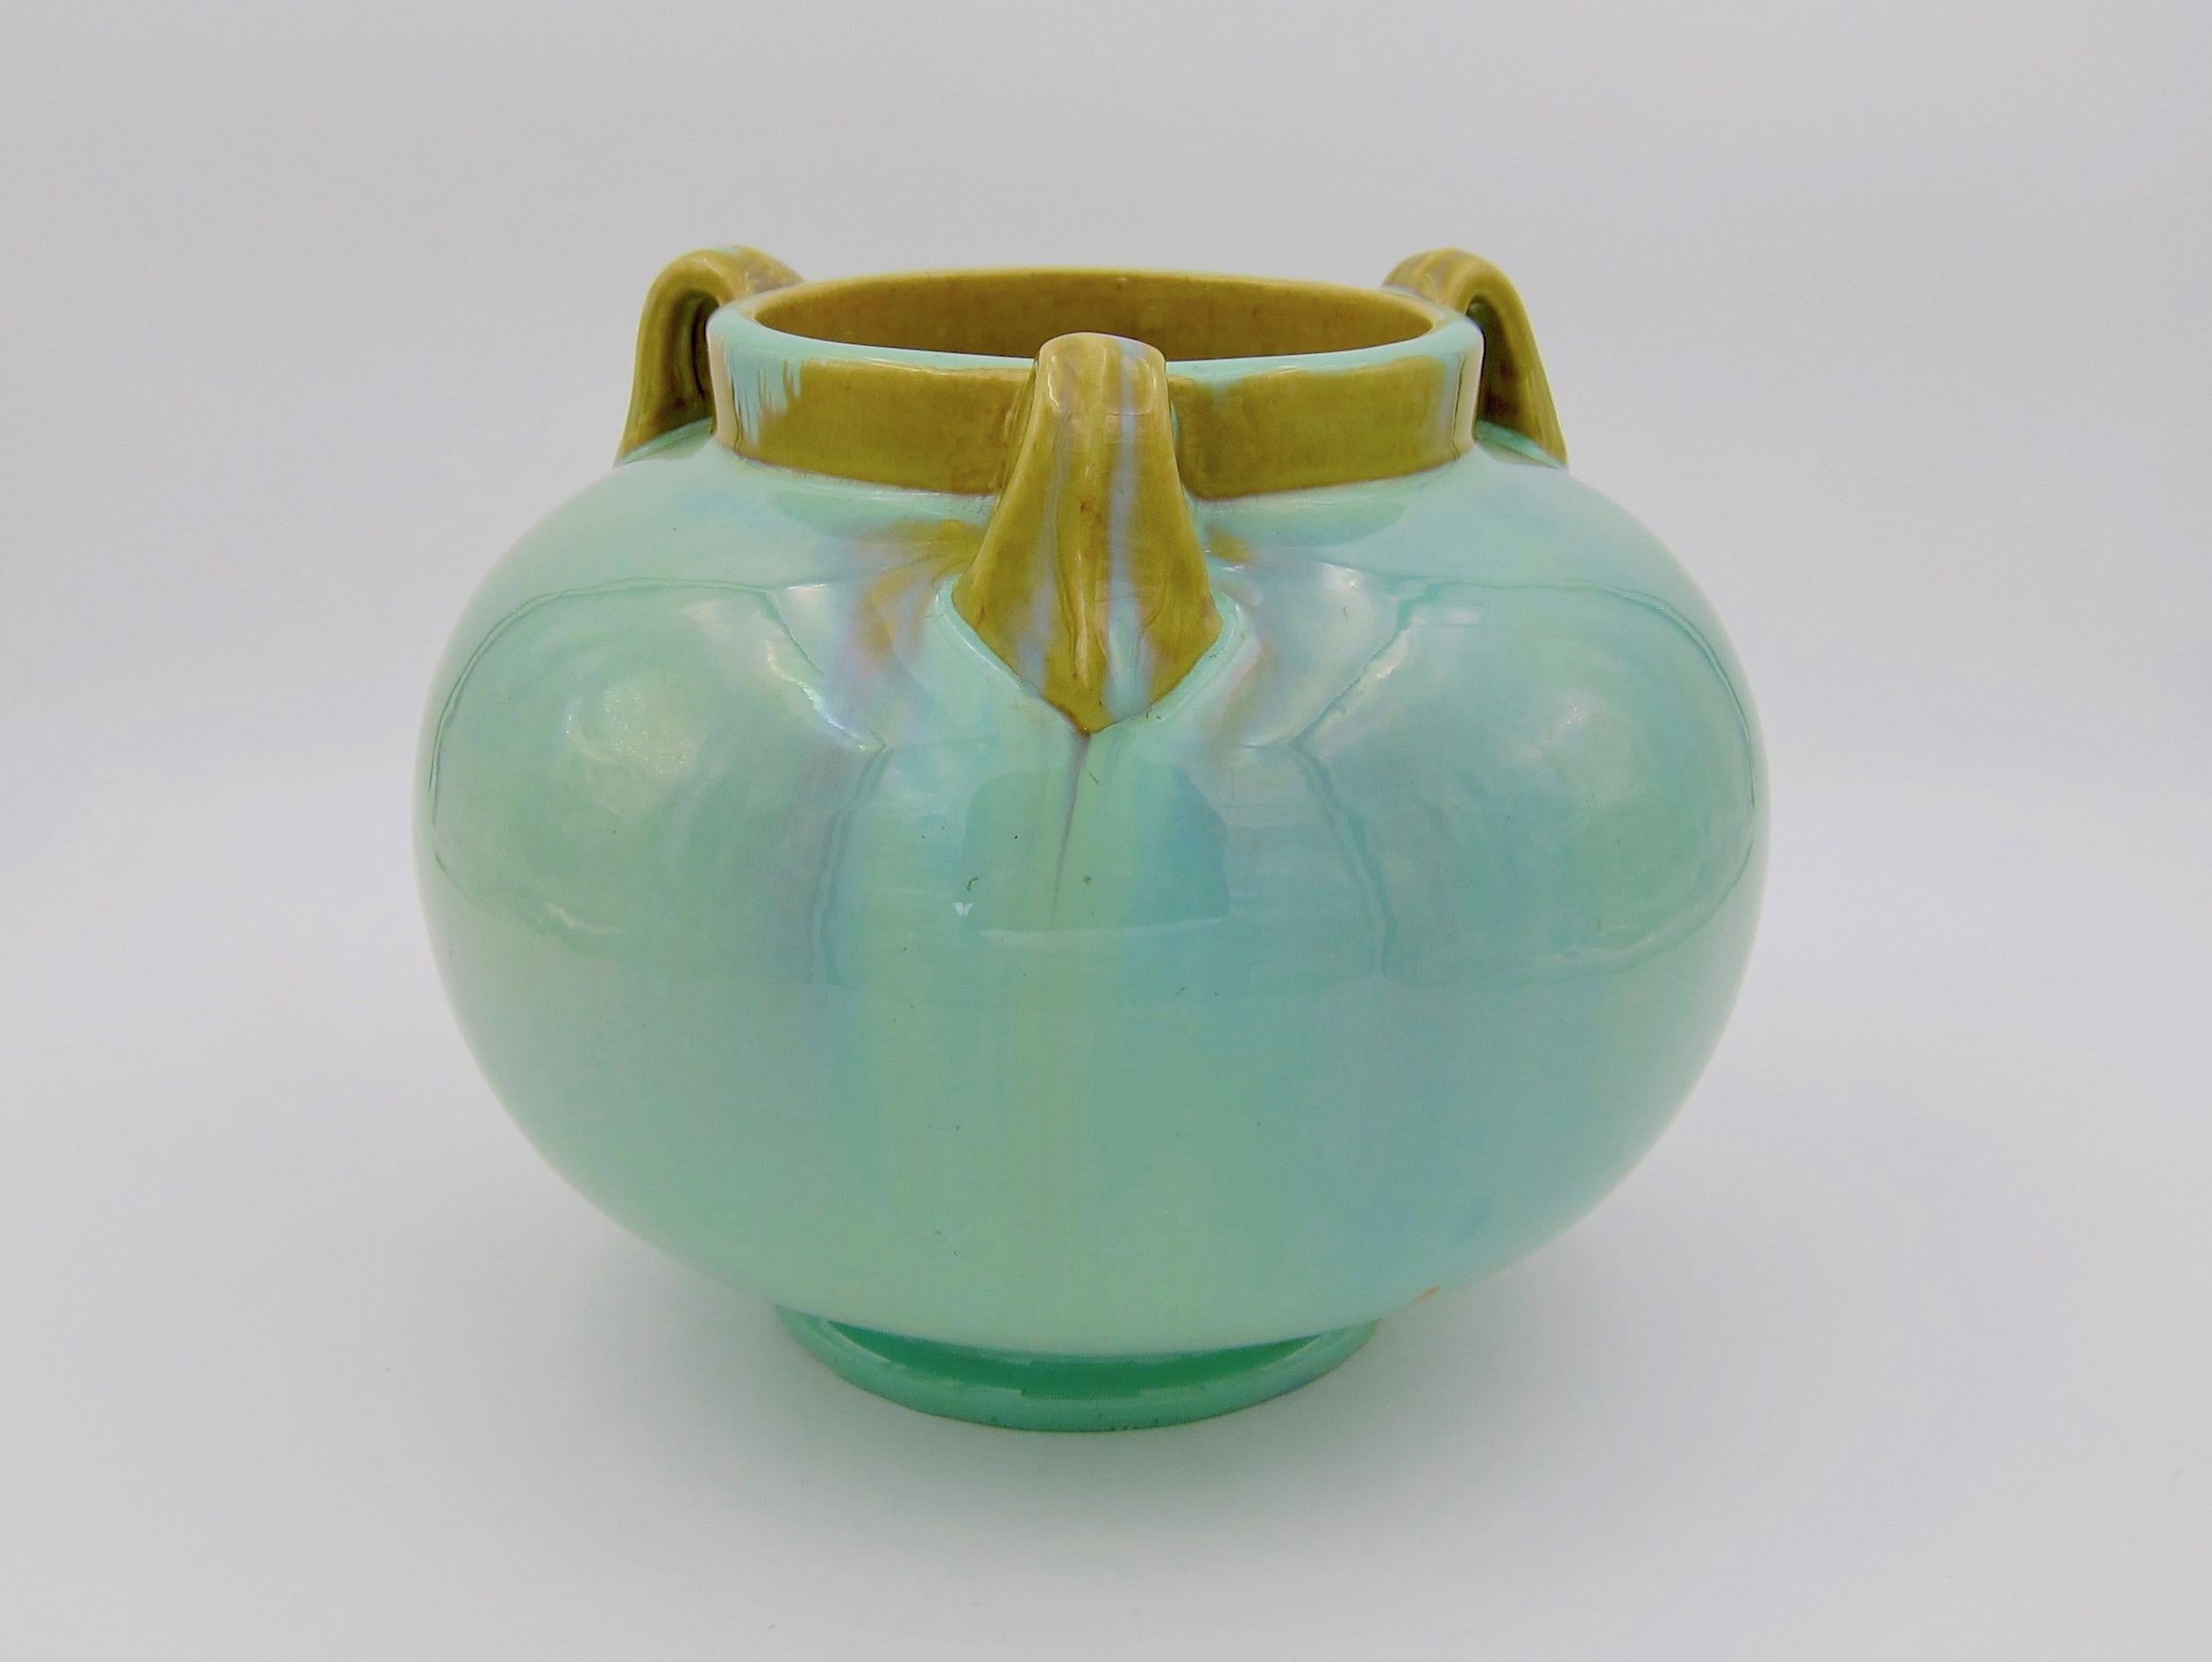 Glazed Vintage Fulper Pottery Three Handled Vase with a Flambé Glaze